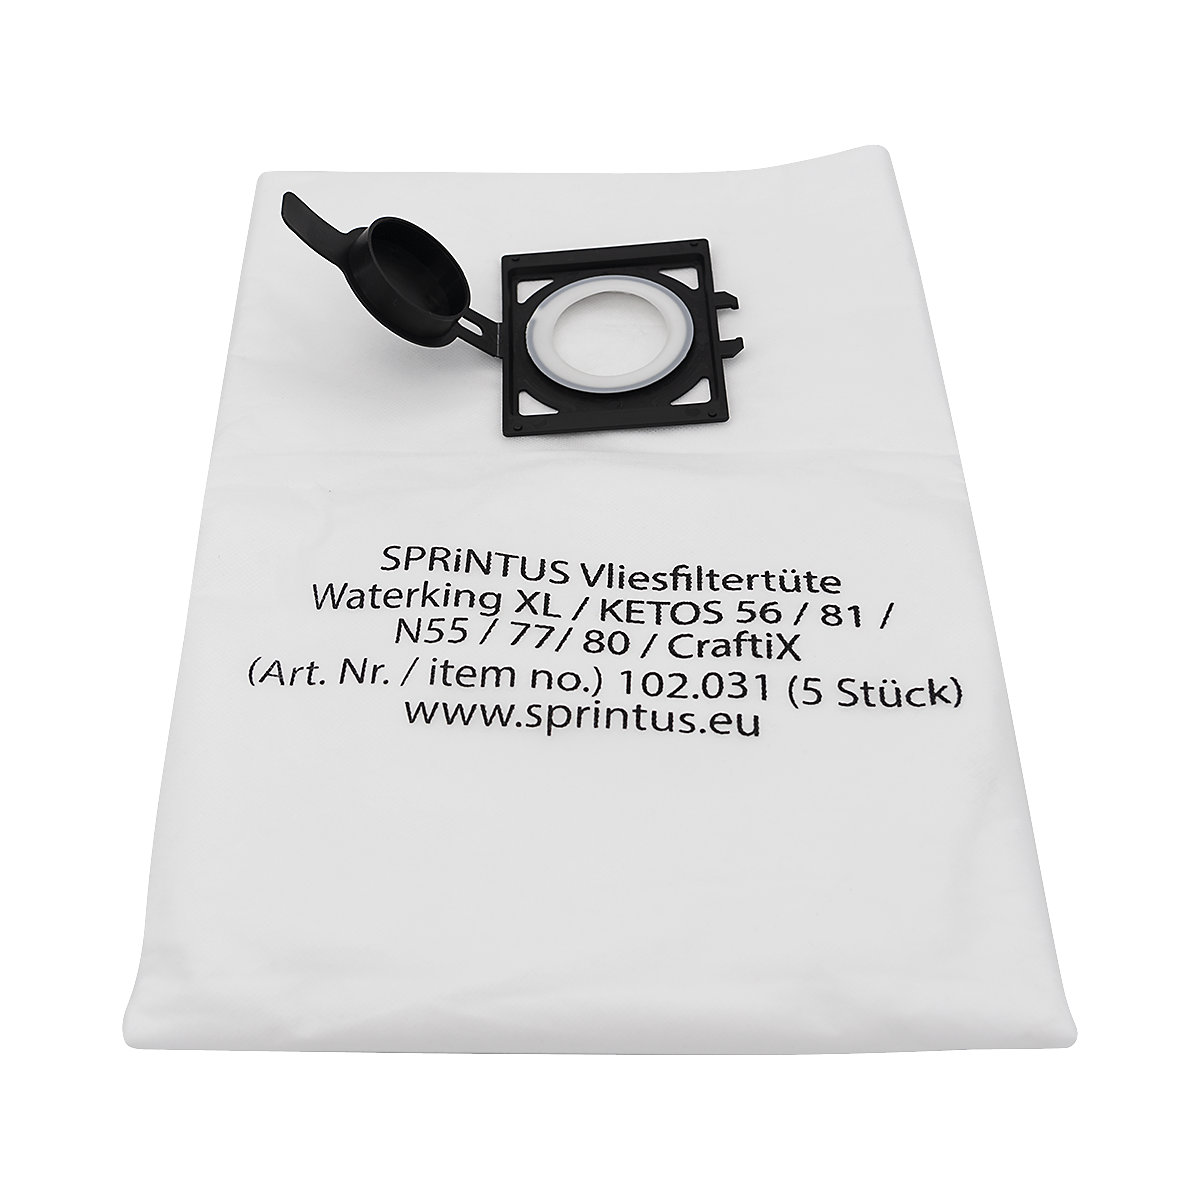 Sacchi-filtro in tessuto-non-tessuto, conf. da 5 pz. - Sprintus